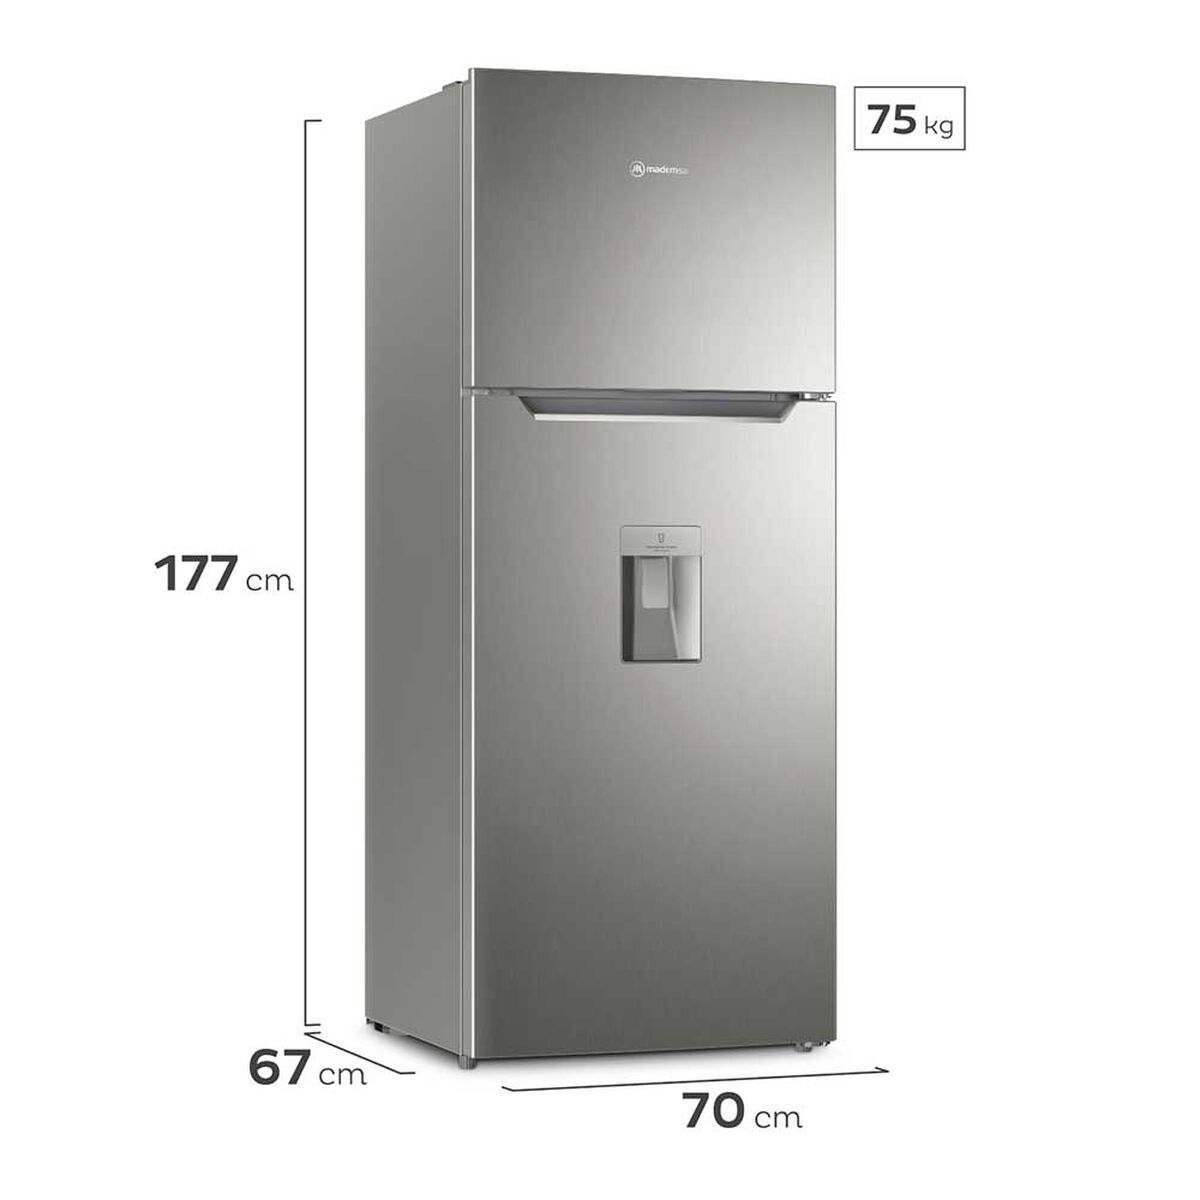 Refrigerador No Frost Mademsa Altus 1430W 425 lts.